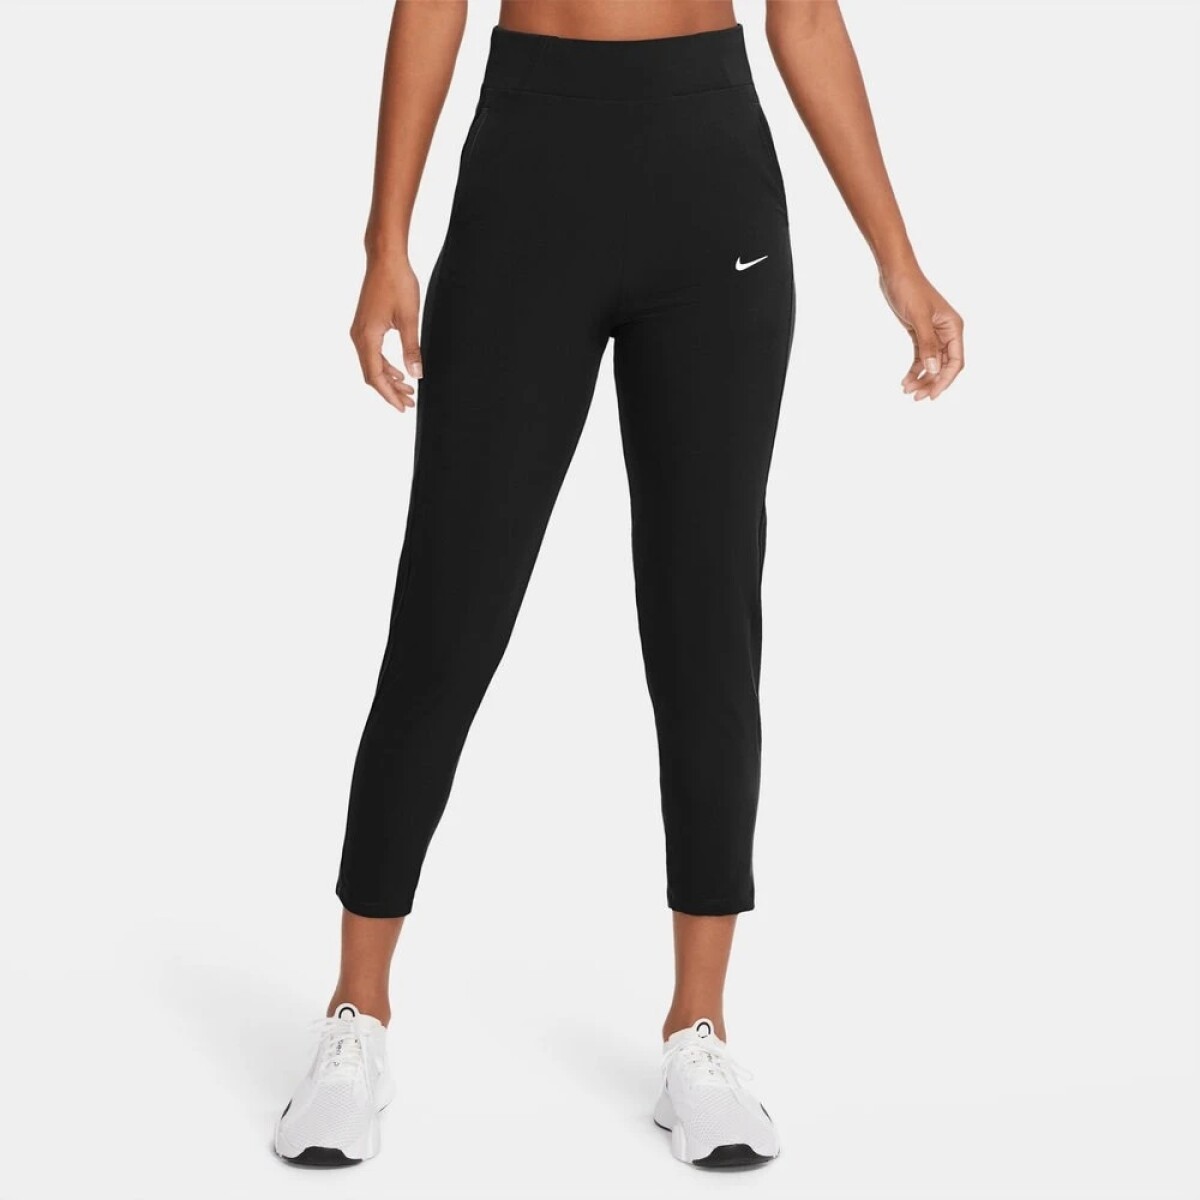 Pantalon Nike Running Dama Bliss Vctry BLACK/(WHITE) - S/C 